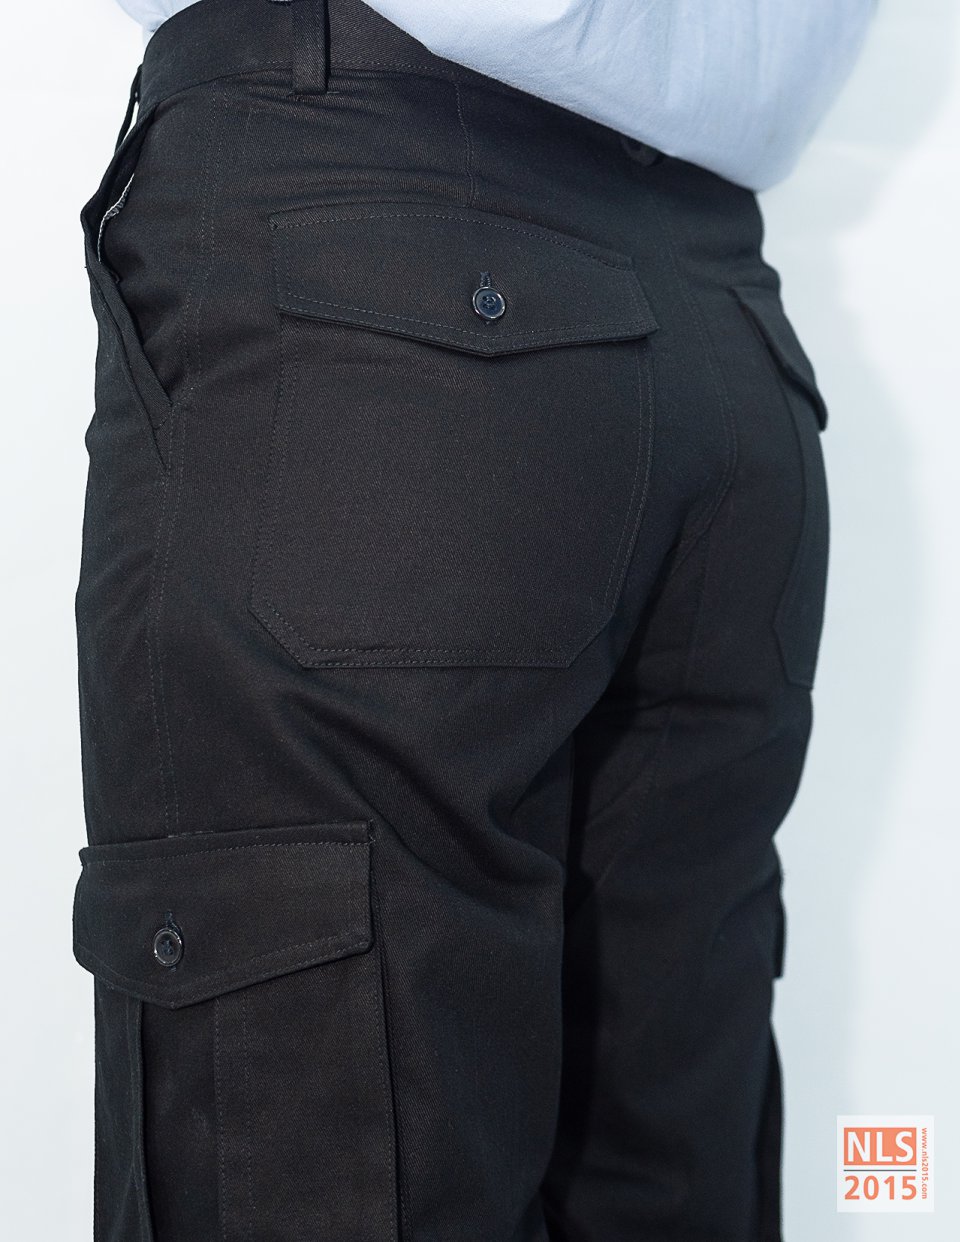 กางเกงมีกระเป๋าข้างขา ไม่มีจีบ กระเป๋าปะหลังสองใบ เนื้อผ้าคอมทวิวสีดำรูปที่ 